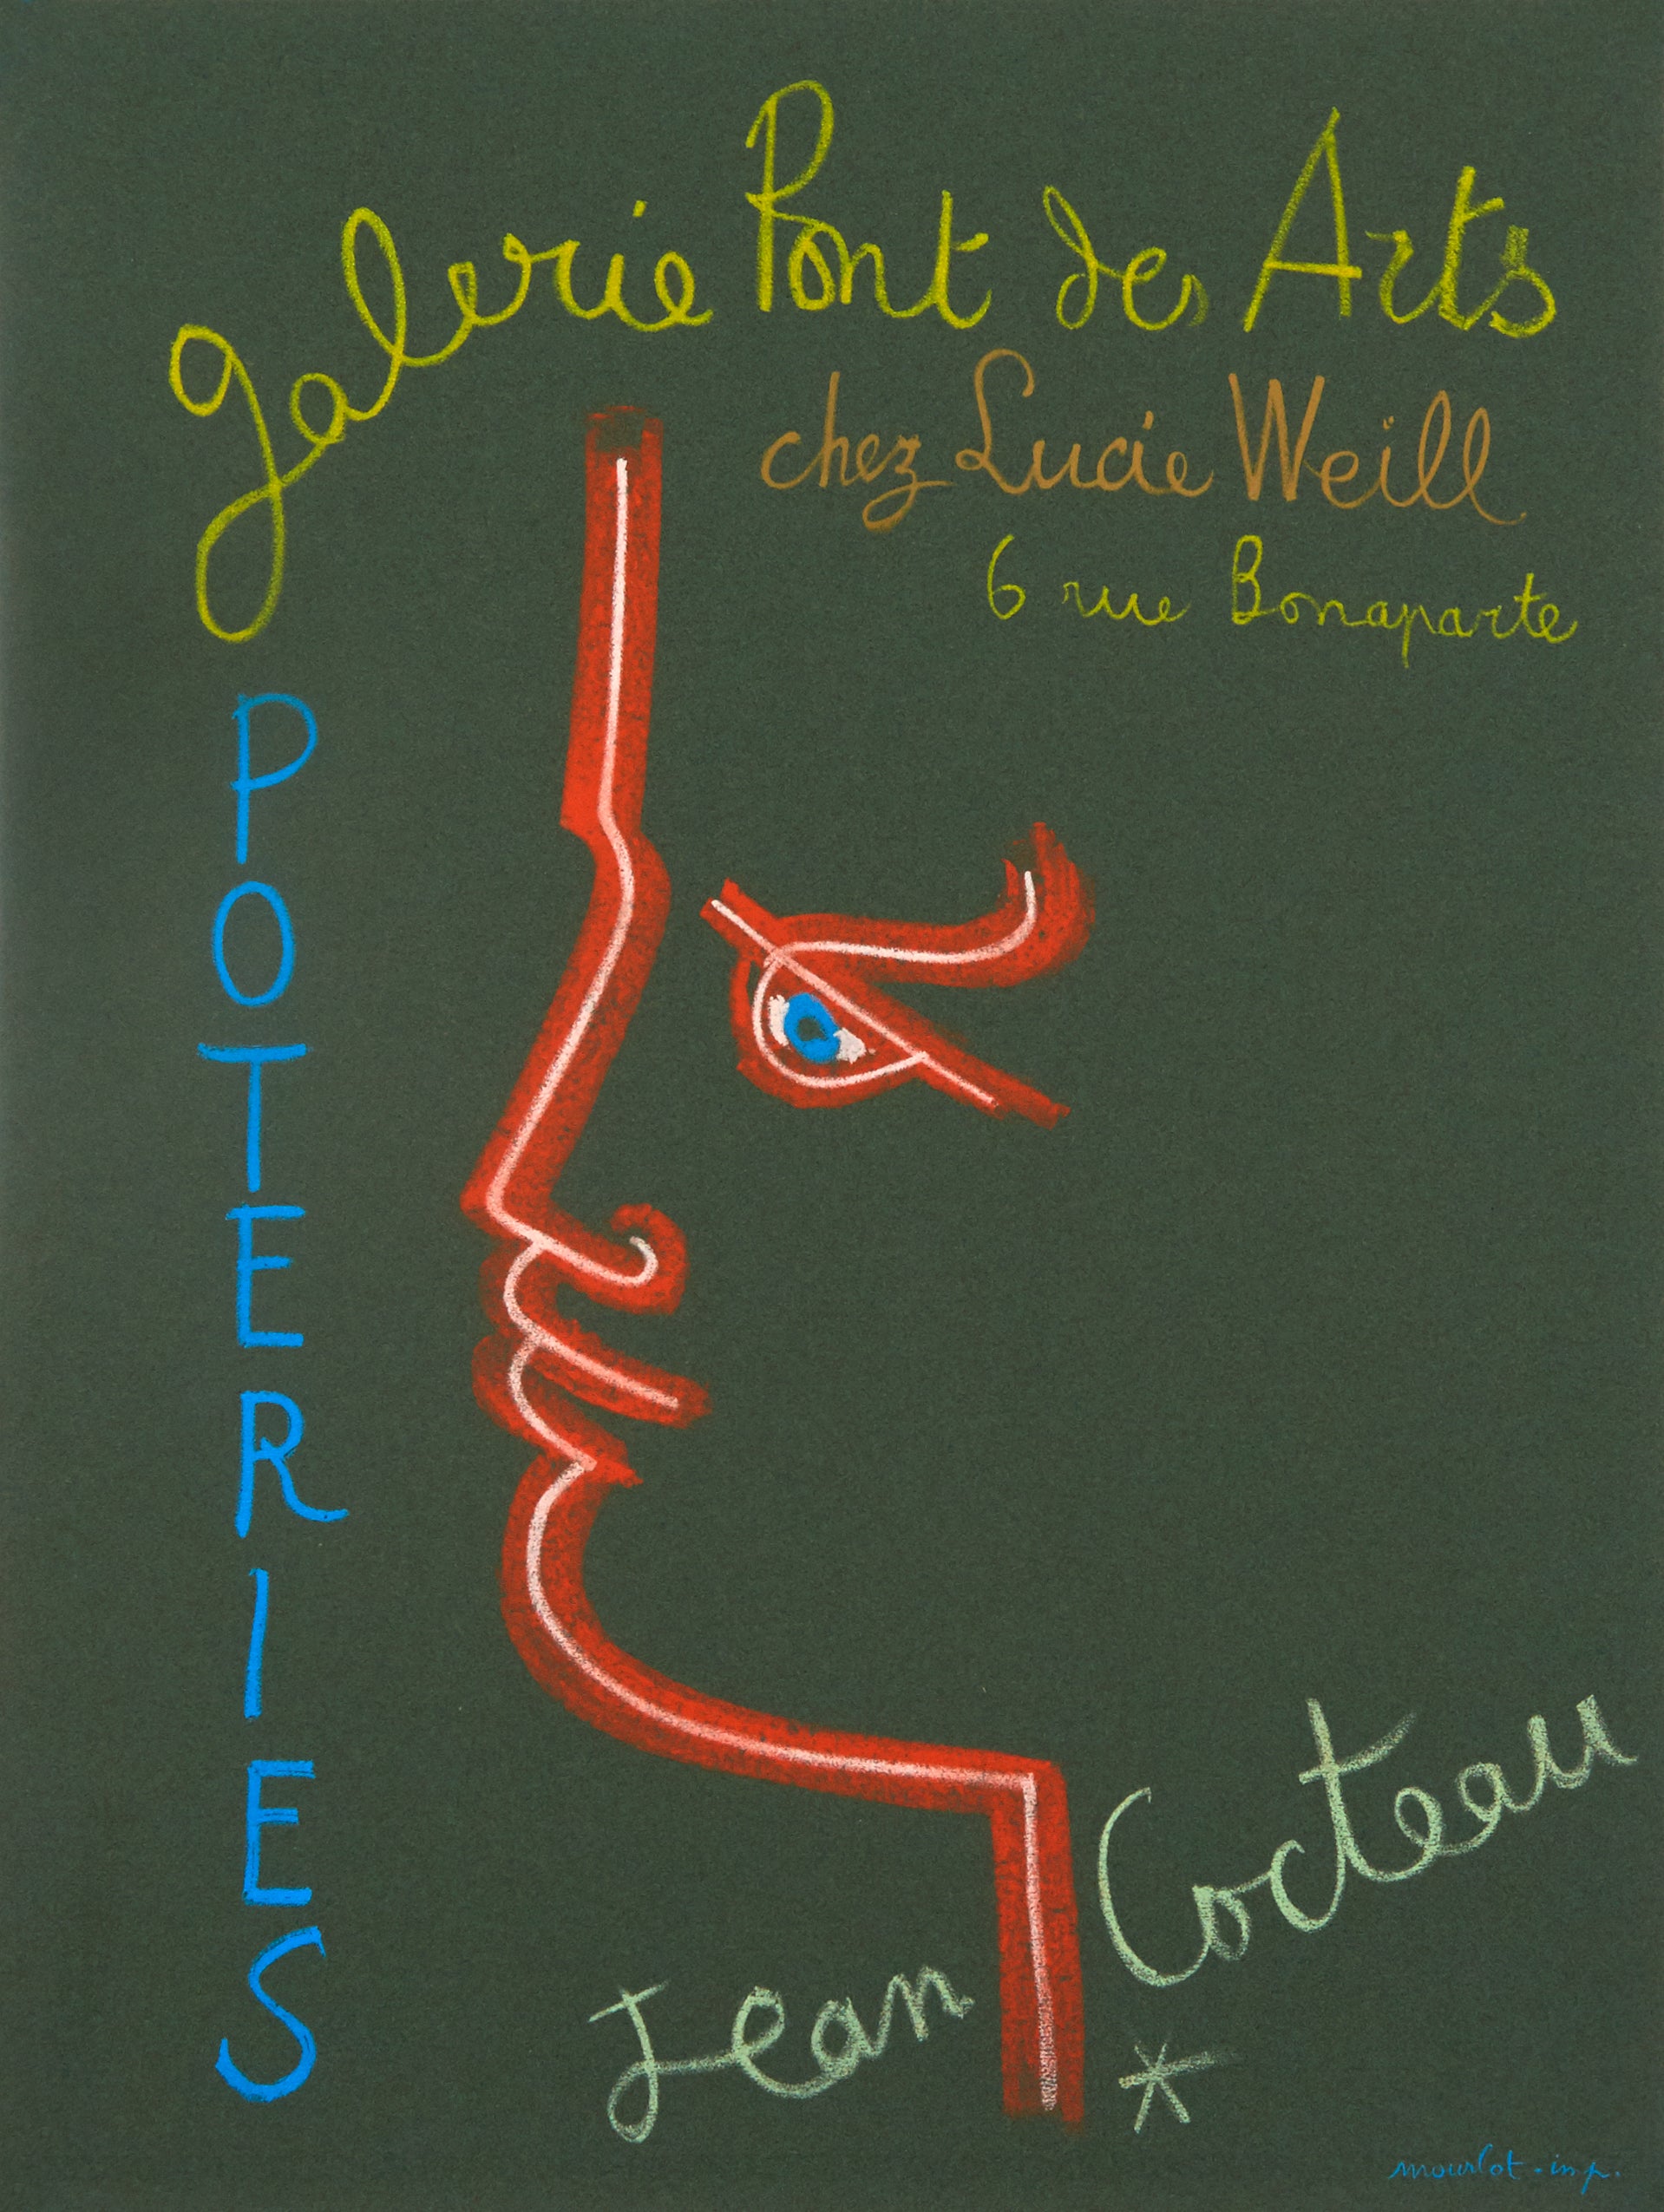 Galerie Pont des Arts Poteries by Jean Cocteau - Mourlot Editions - Fine_Art - Poster - Lithograph - Wall Art - Vintage - Prints - Original